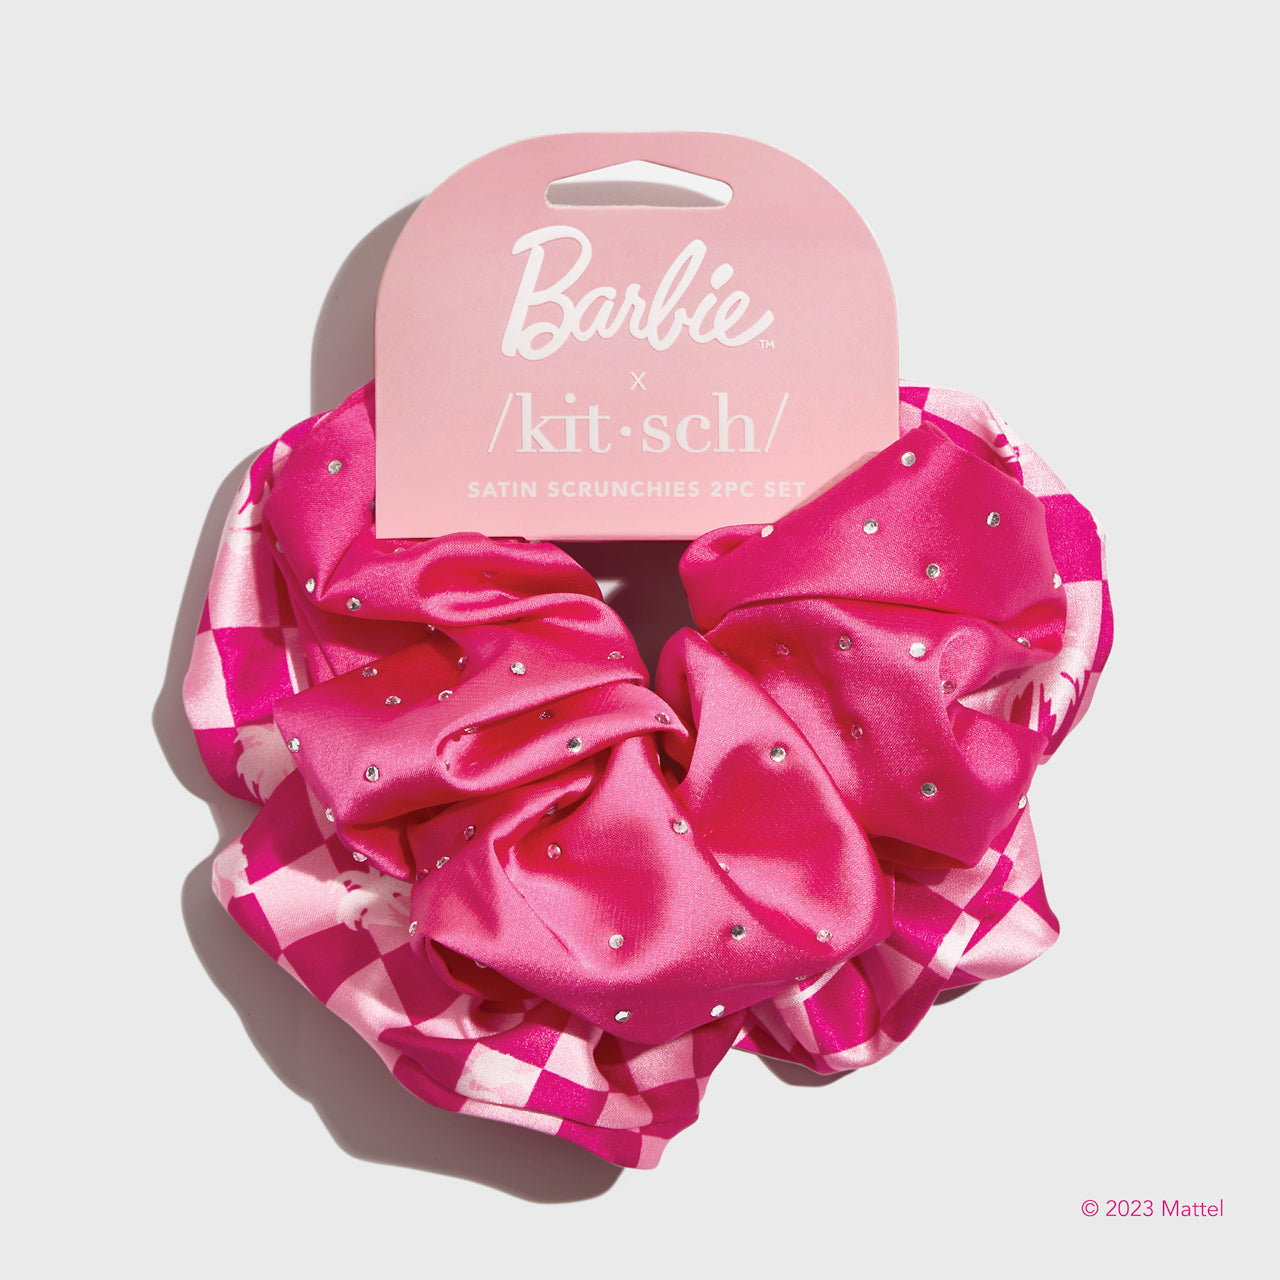 Barbie™ x Kitsch keräilypaketti